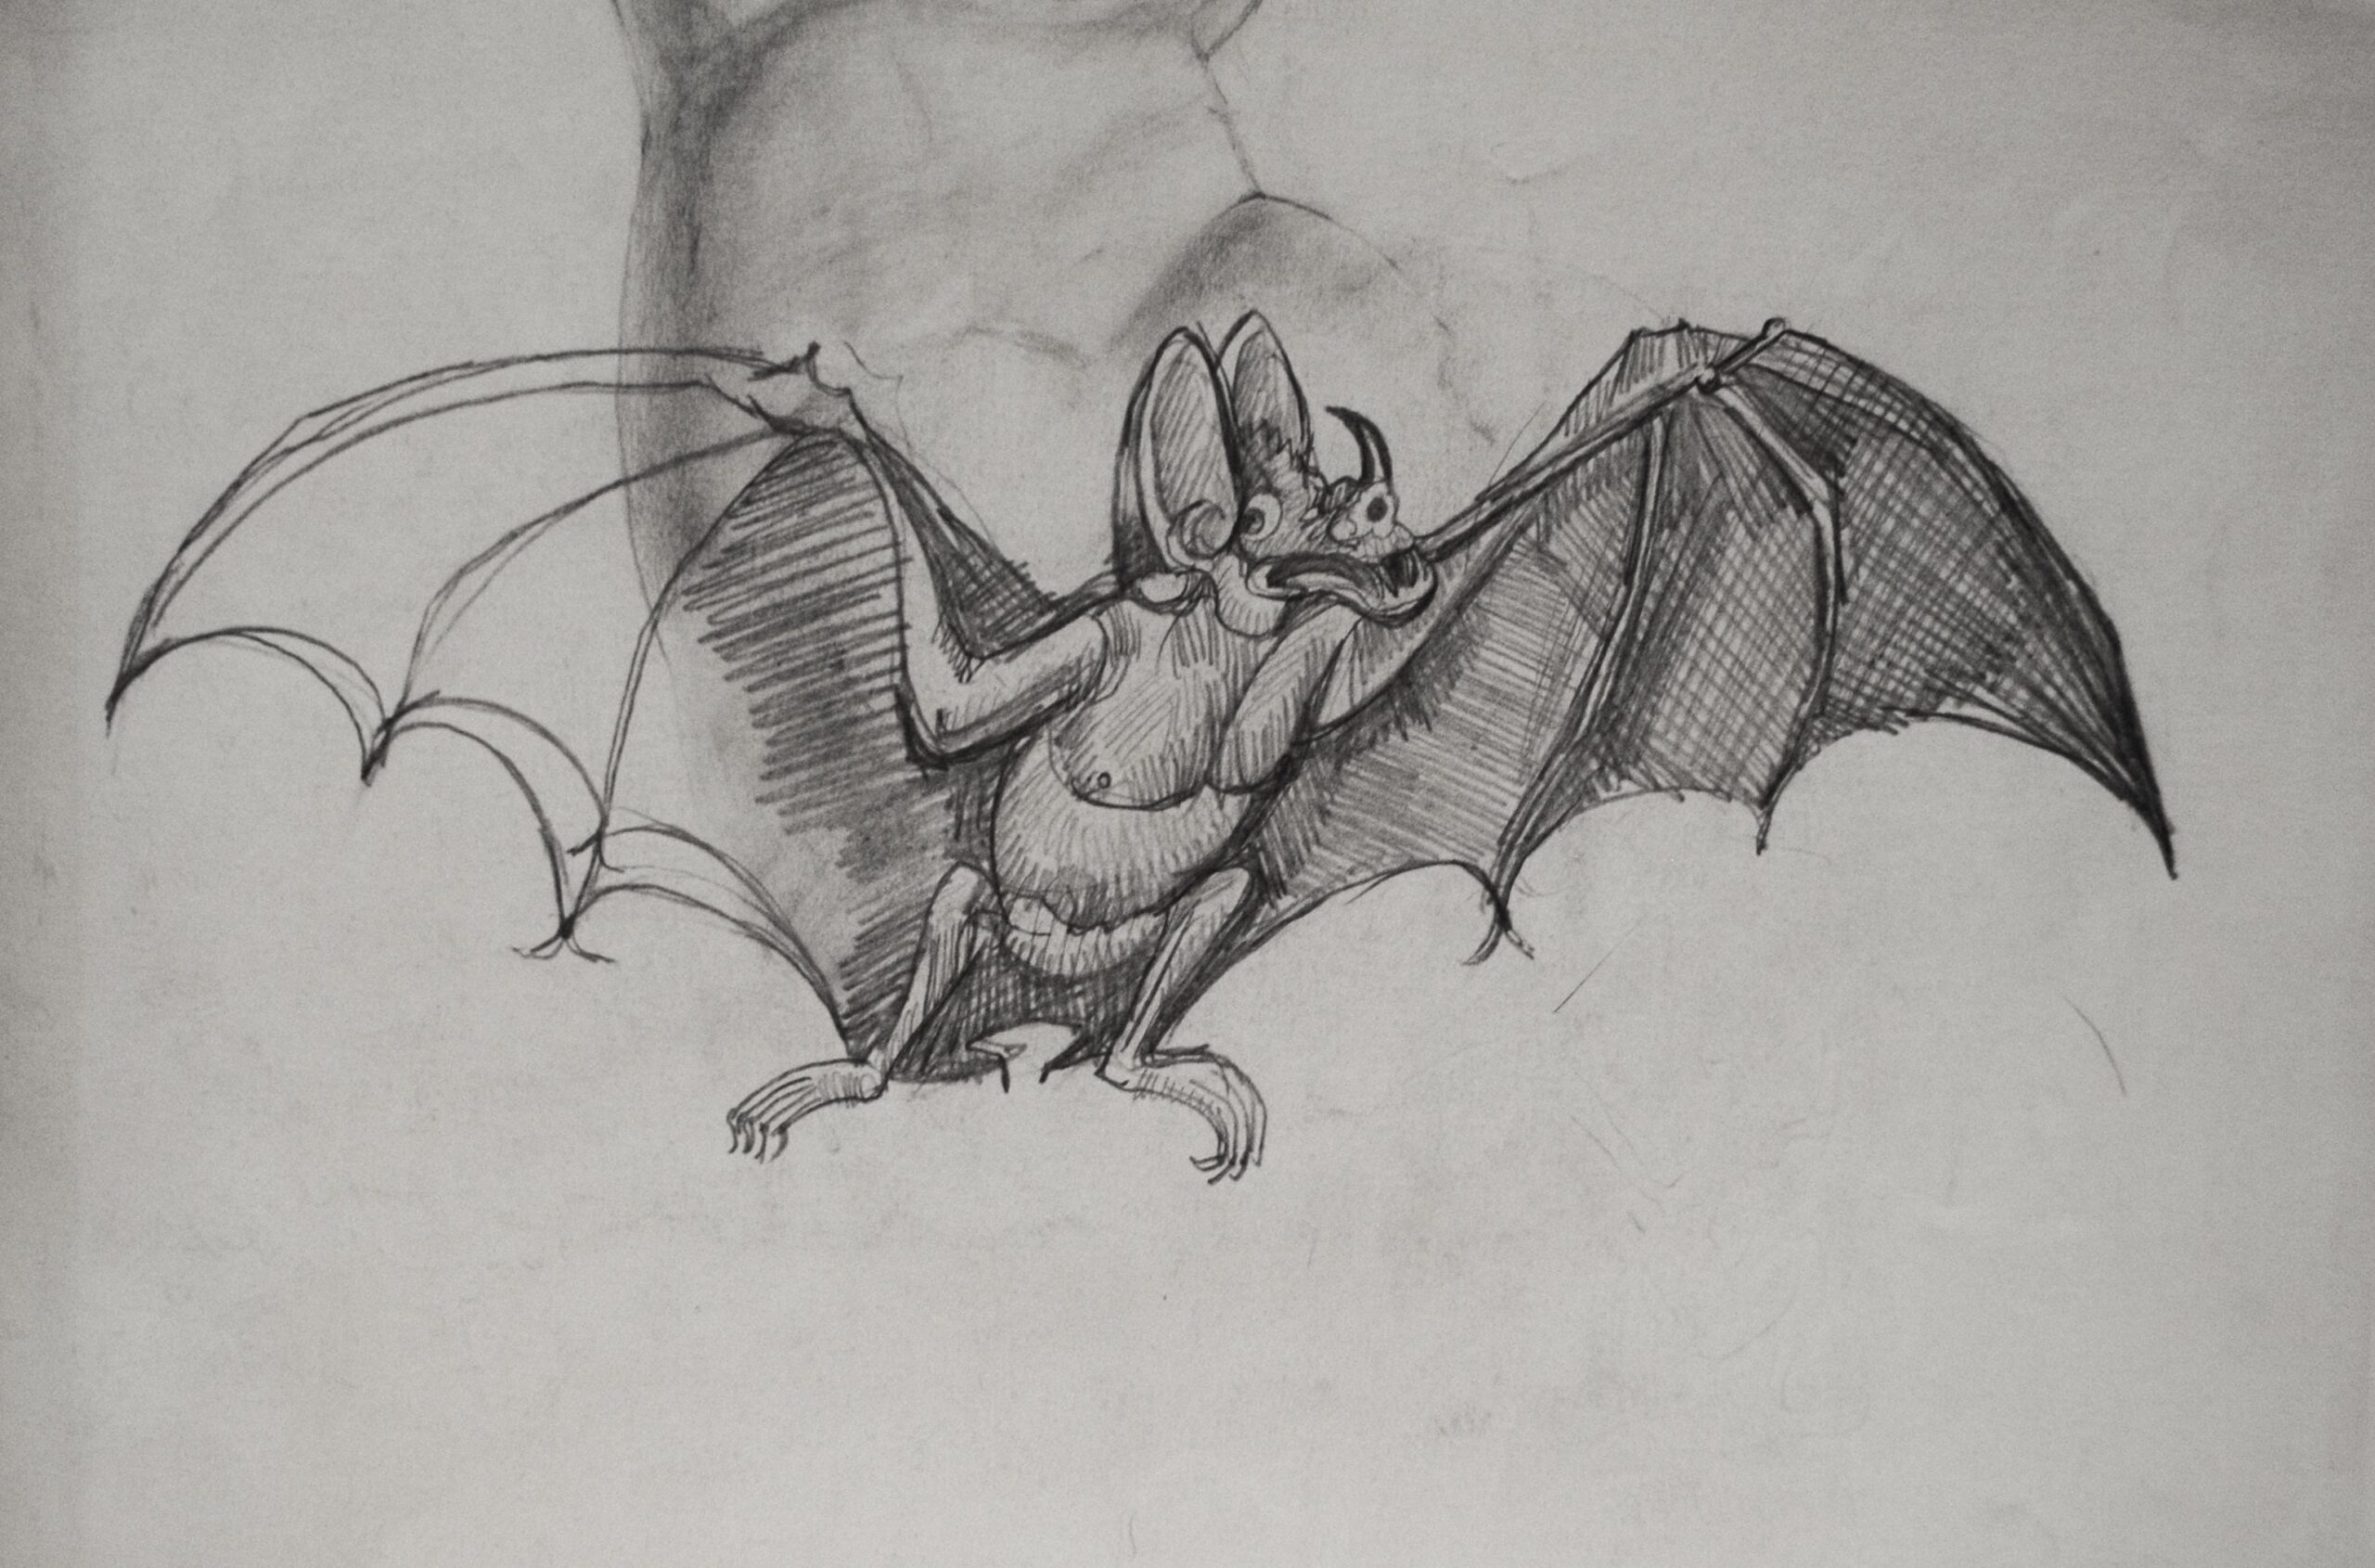 Dibujo de José Manaut. Hombre cerdo, desnudo, con una vara o posible escopeta en la boca y alas de murciélago.